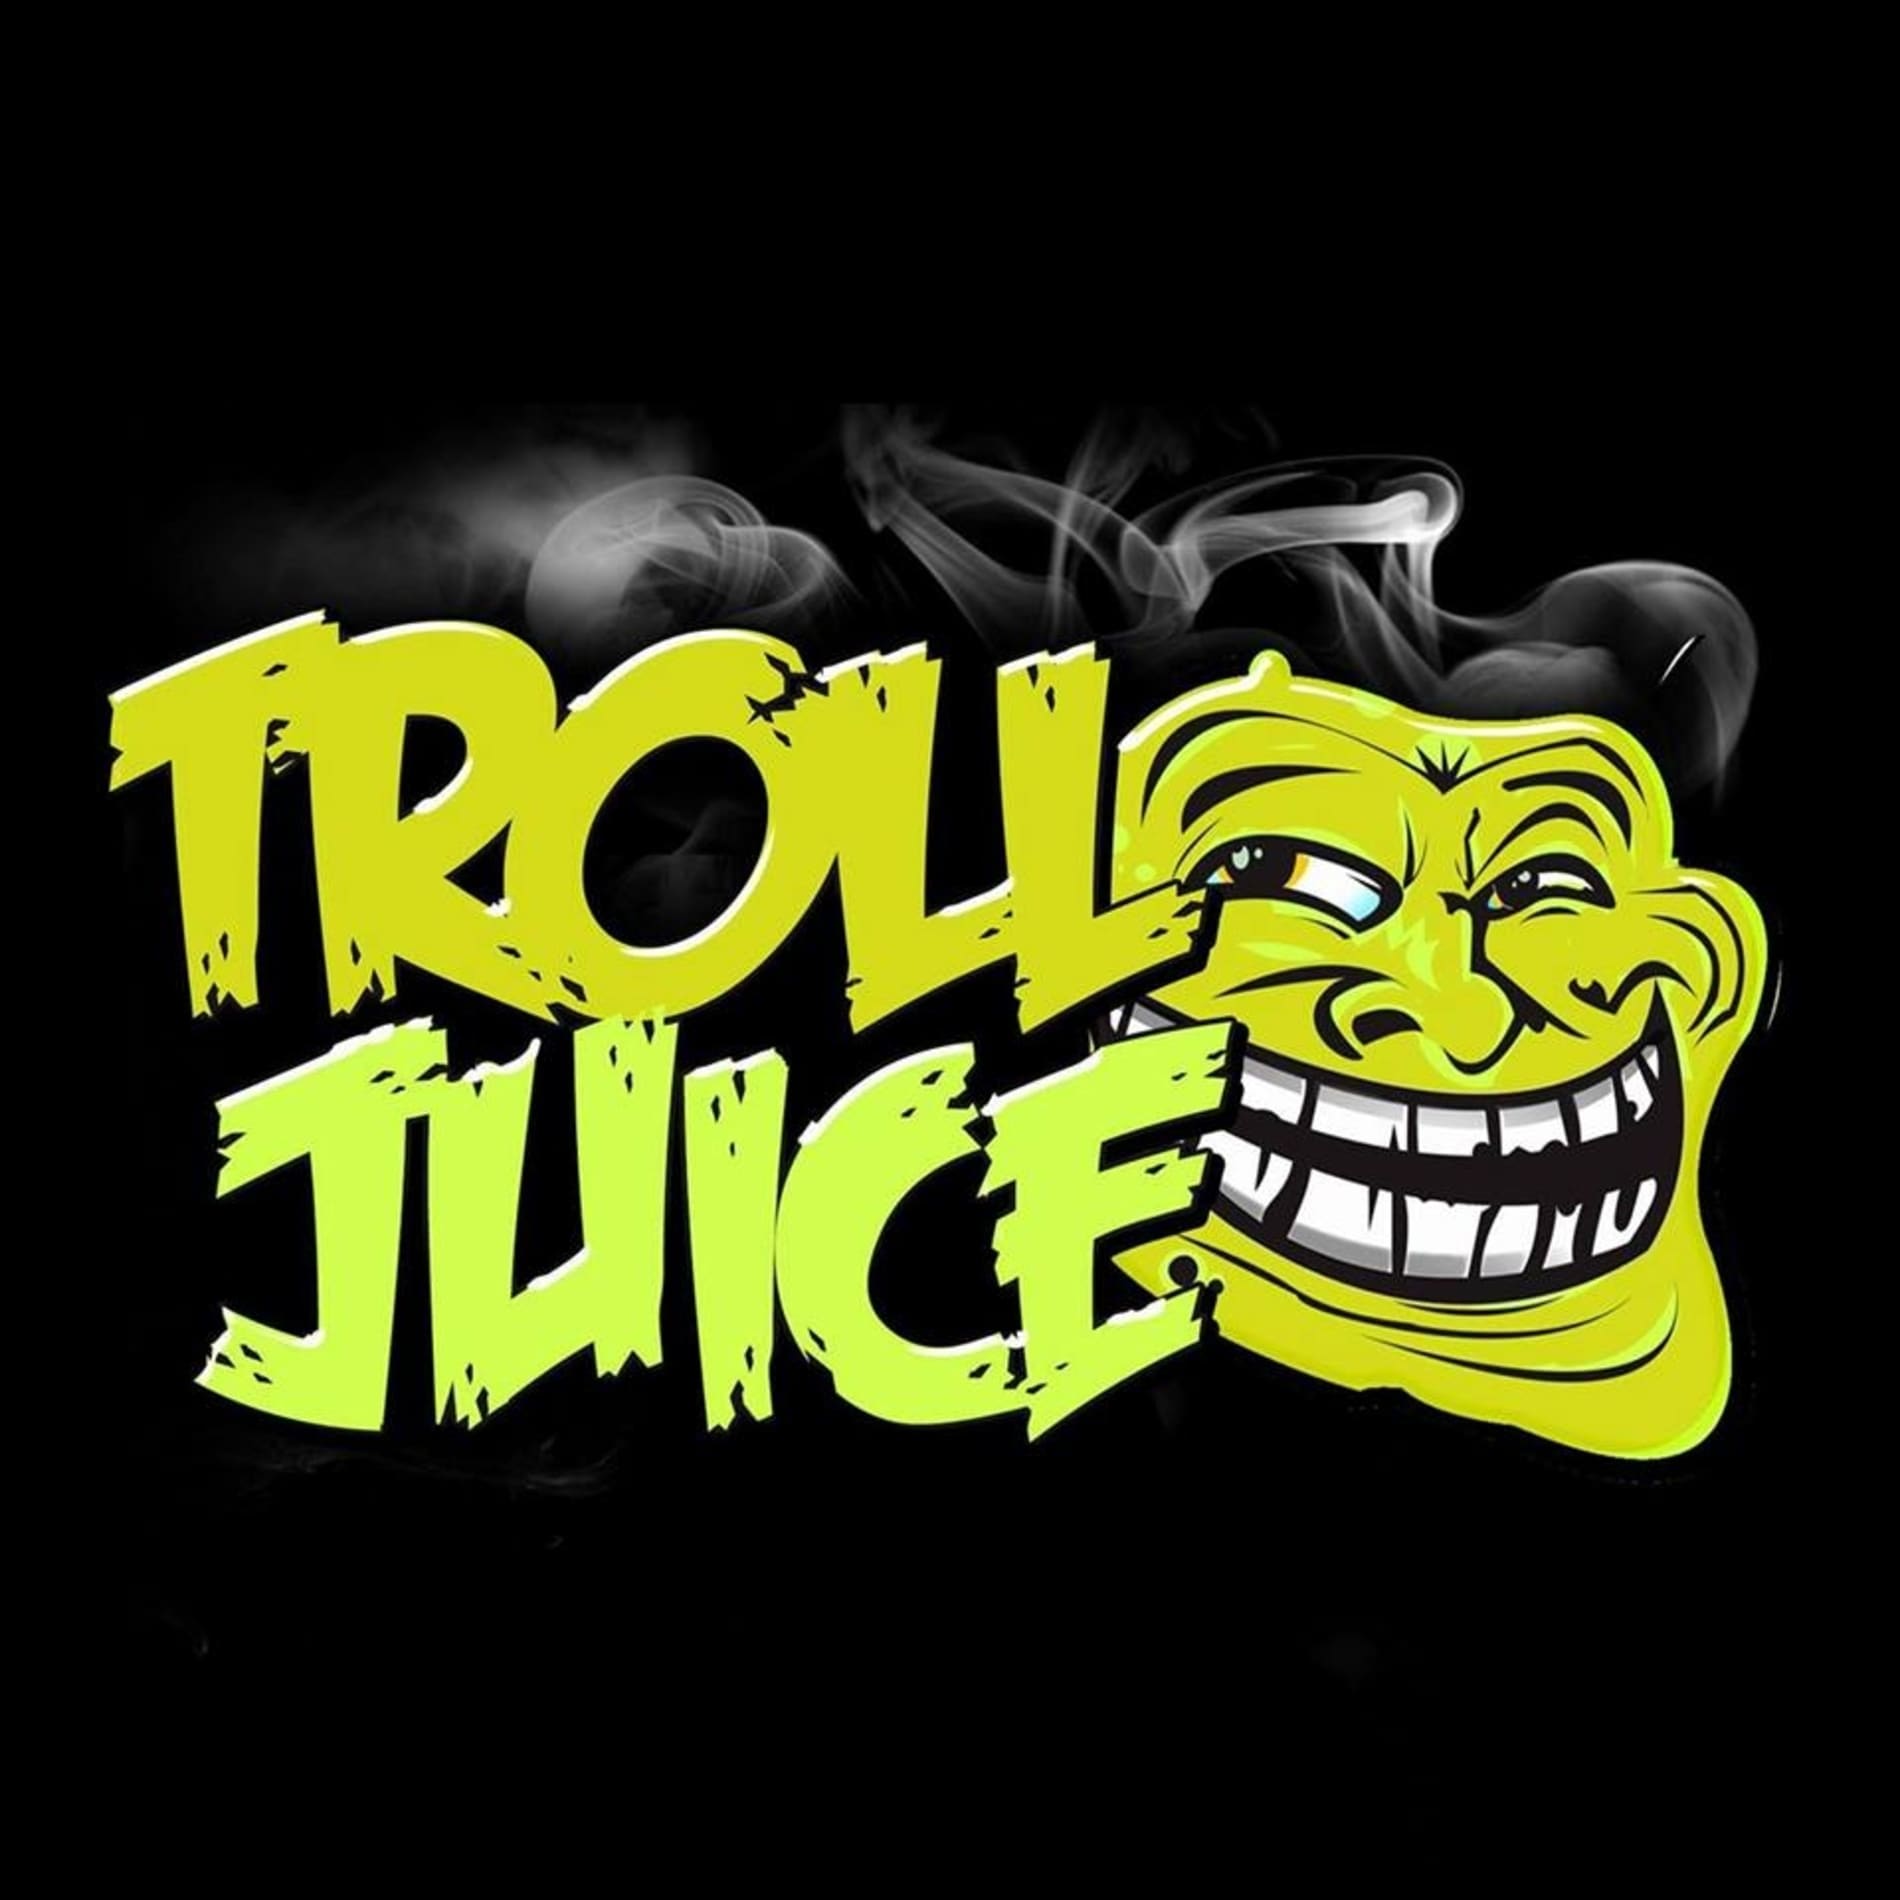 Troll Juice